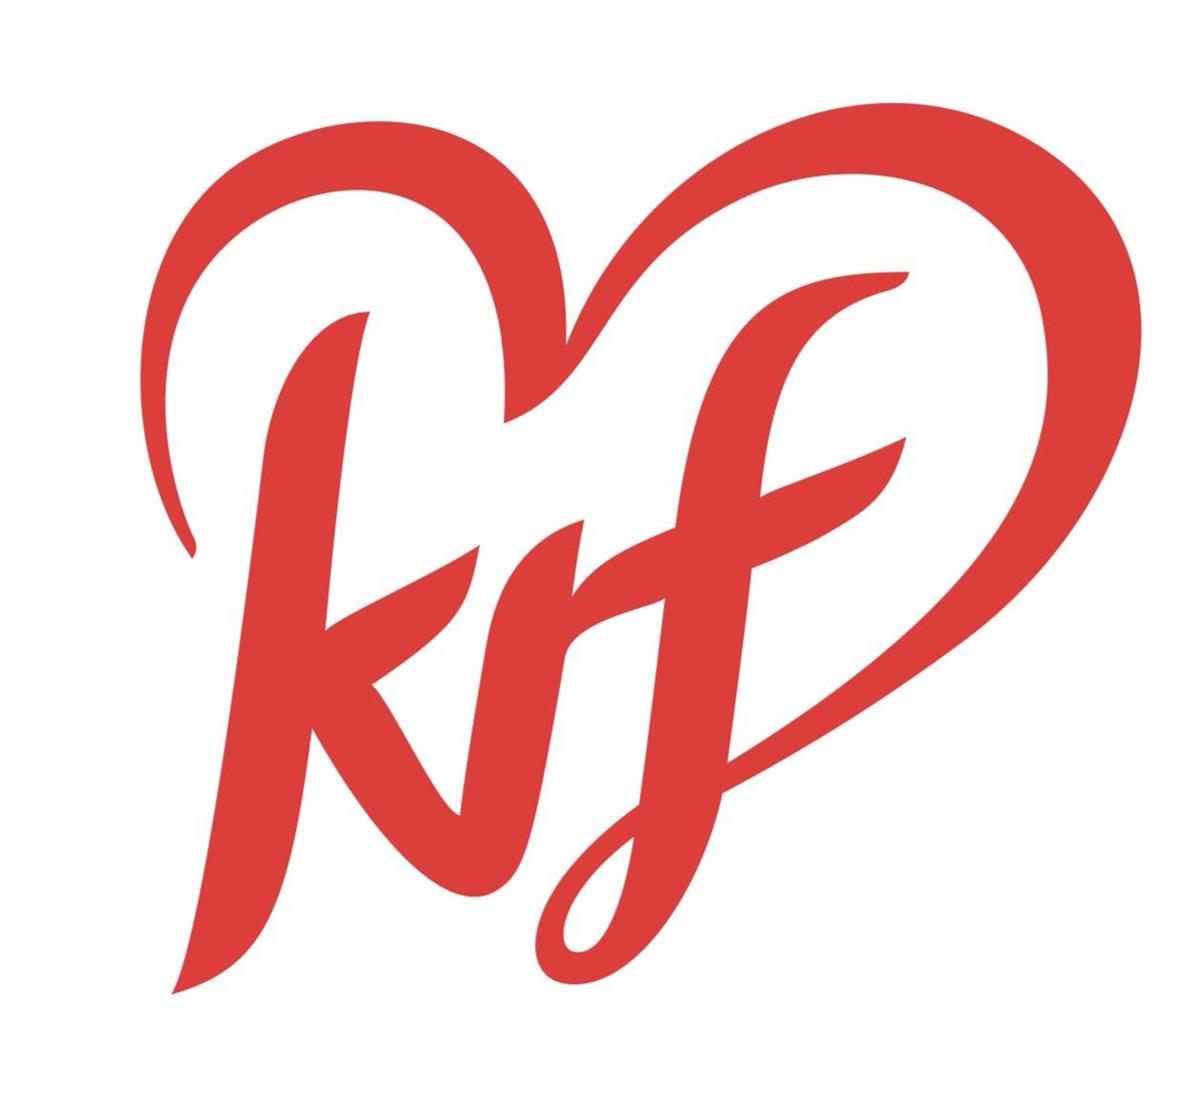 Logo krf - Klikk for stort bilde